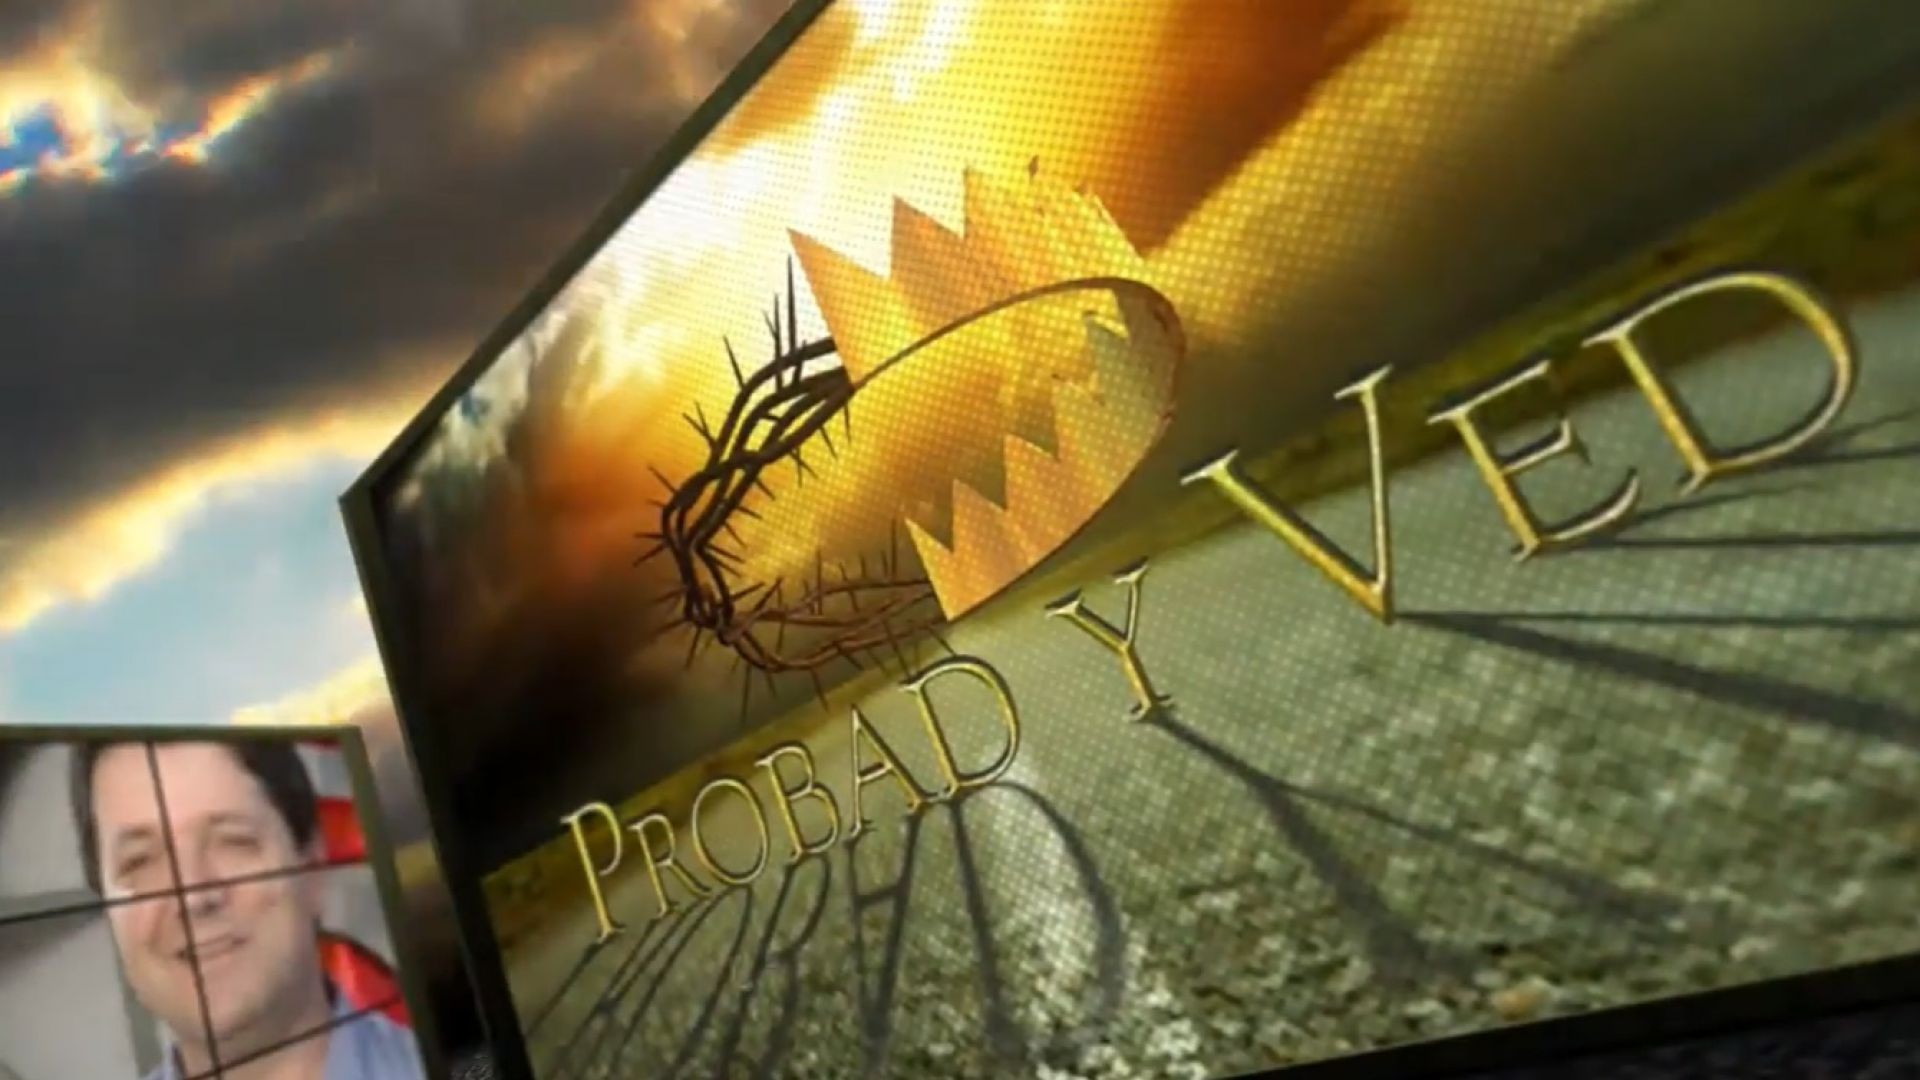 Probad y Ved 2012 - Sociedad con Dios